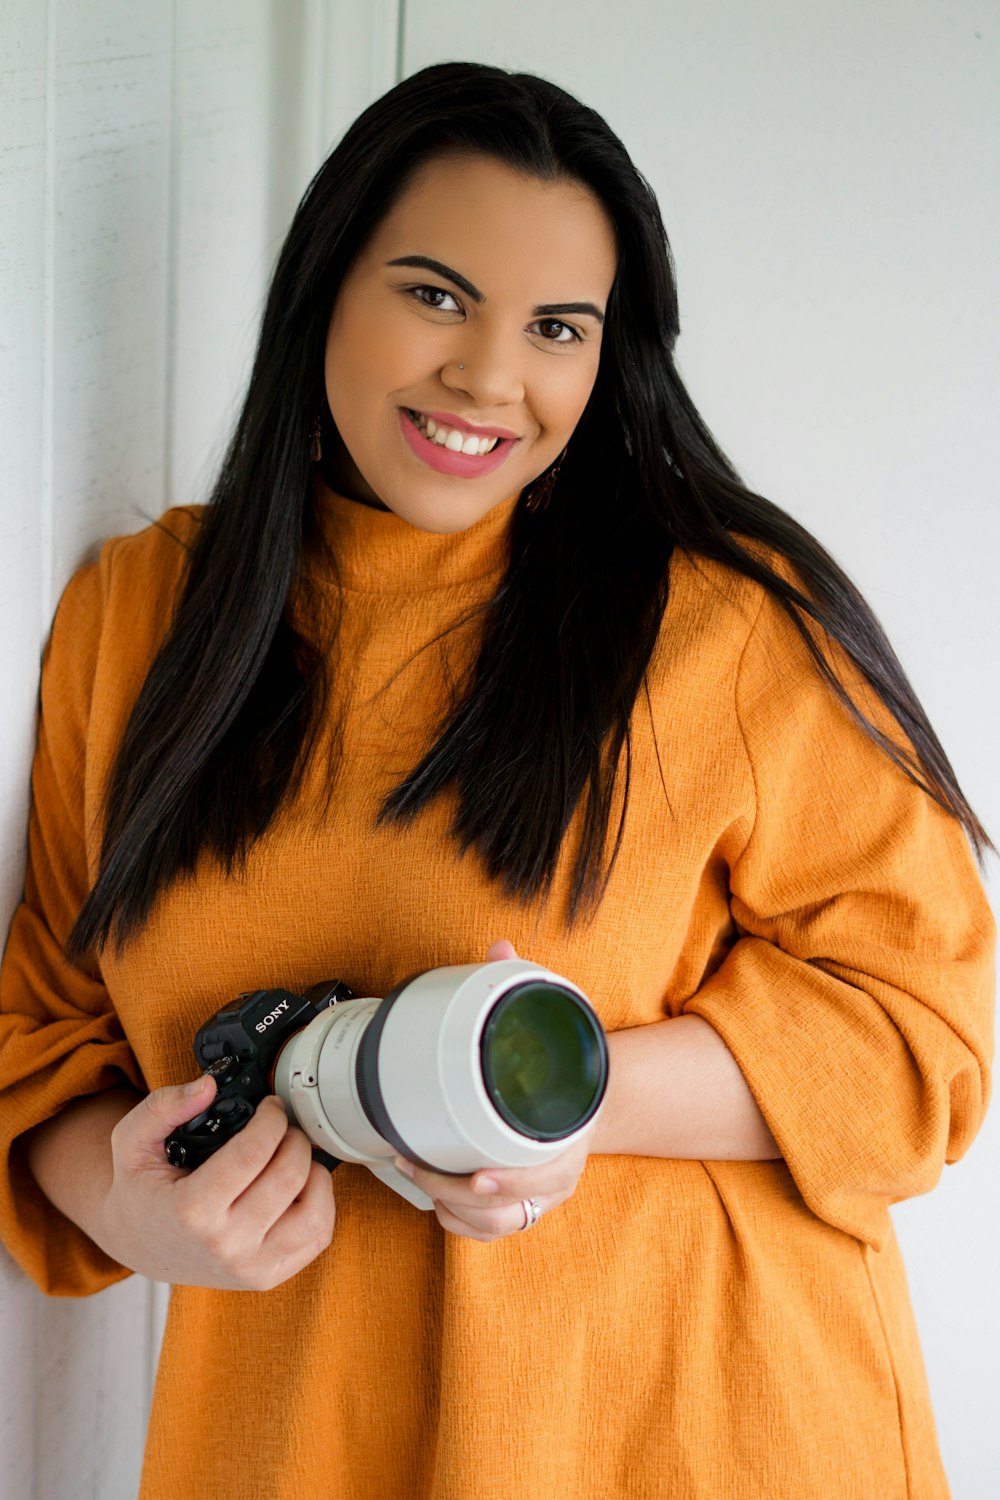 Femme en pull orange tenant un appareil photo noir et blanc